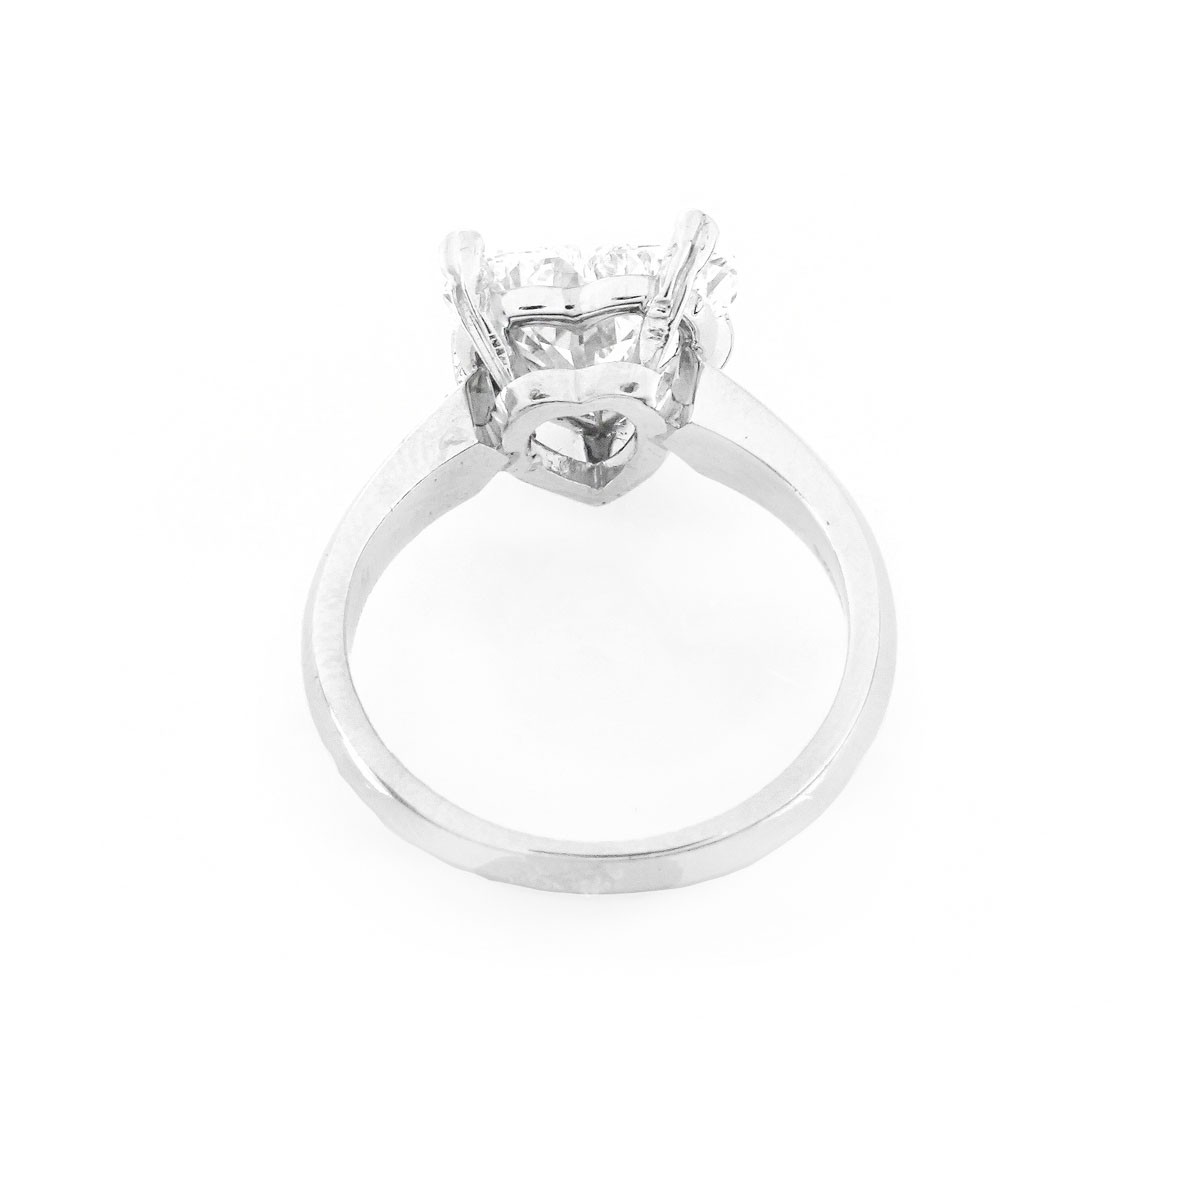 GIA Certified 2.53 Carat Diamond Engagement Ring - Image 2 of 8